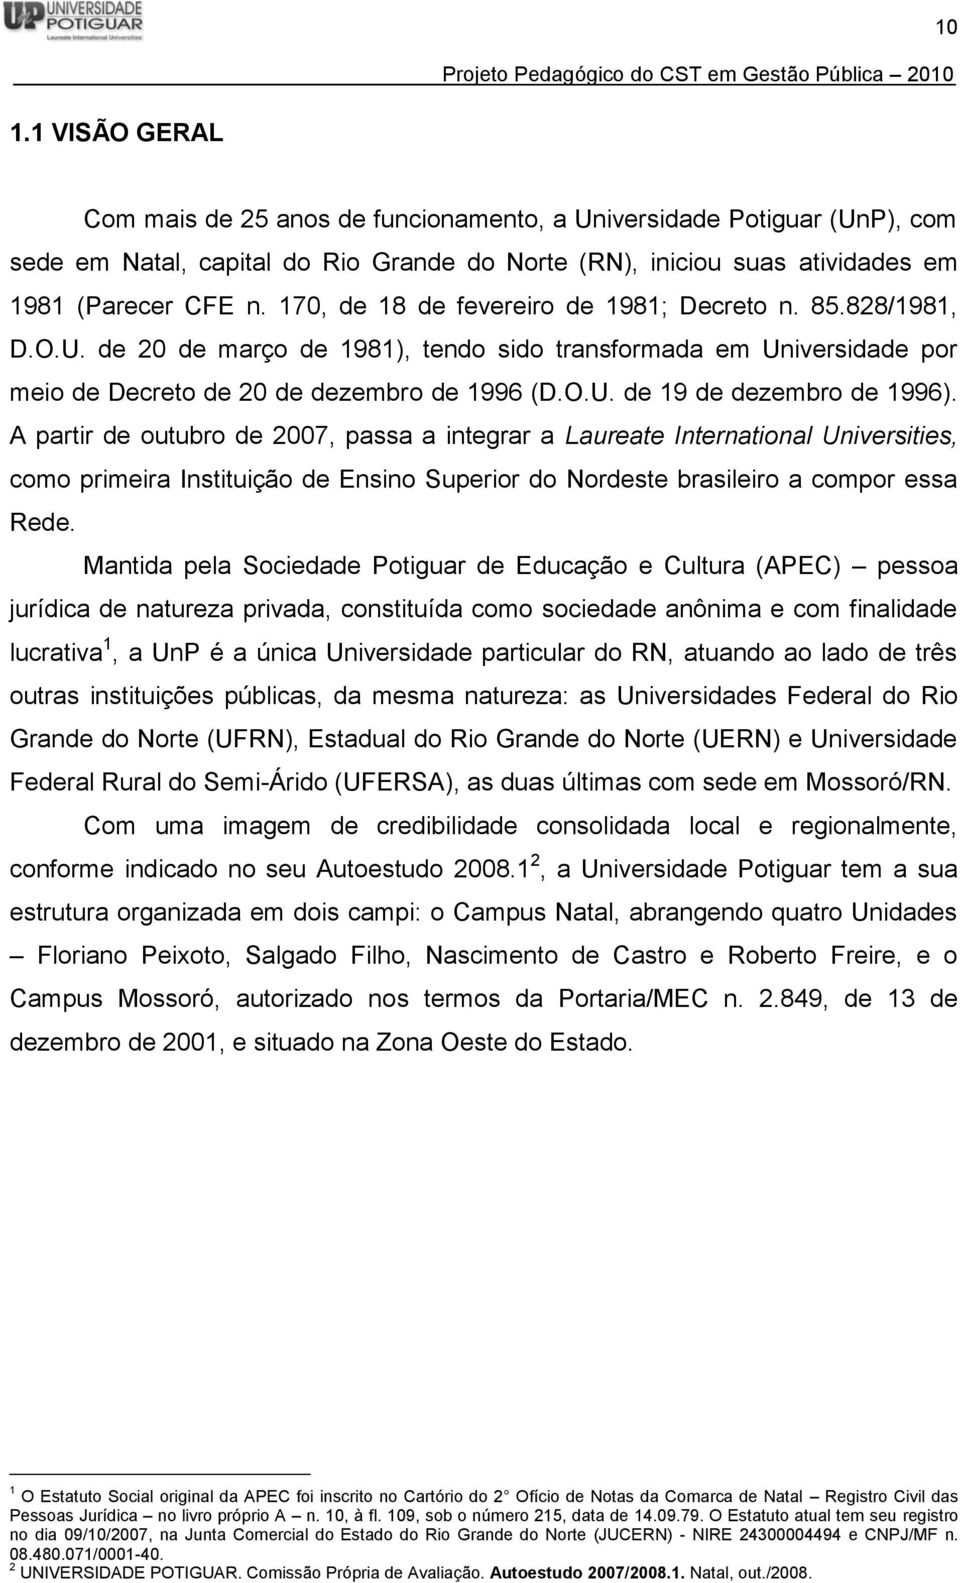 A partir de outubro de 2007, passa a integrar a Laureate International Universities, como primeira Instituição de Ensino Superior do Nordeste brasileiro a compor essa Rede.